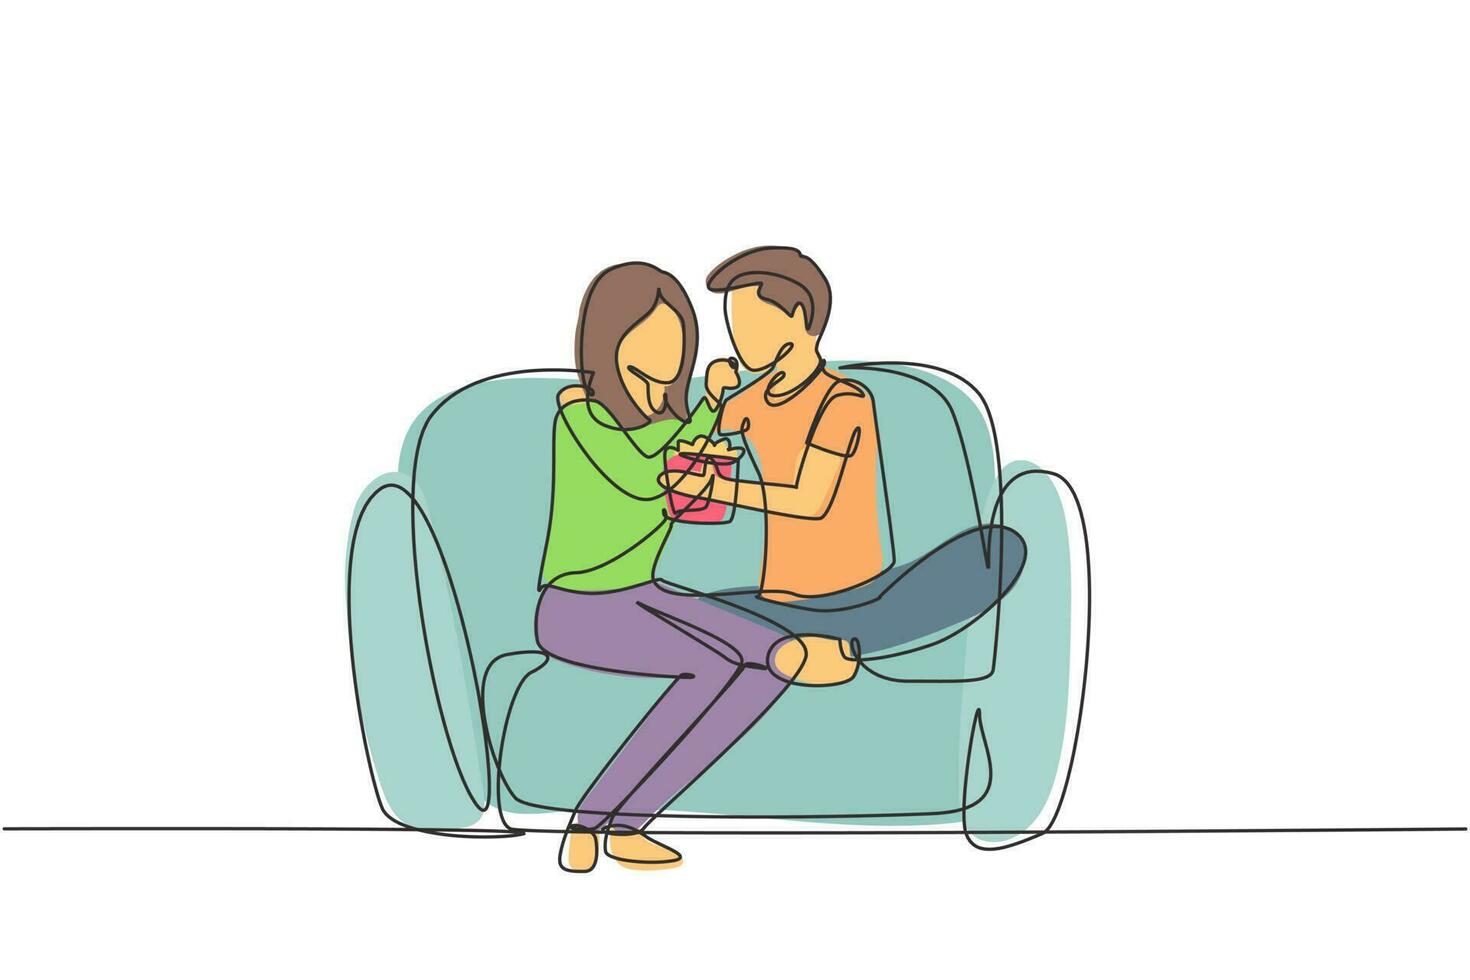 enda kontinuerlig linjeteckning romantiskt par sitter avslappnat tillsammans på soffan, kvinna matar popcorn till mannen. fira bröllopsdag. dynamisk en rad rita grafisk design vektorillustration vektor